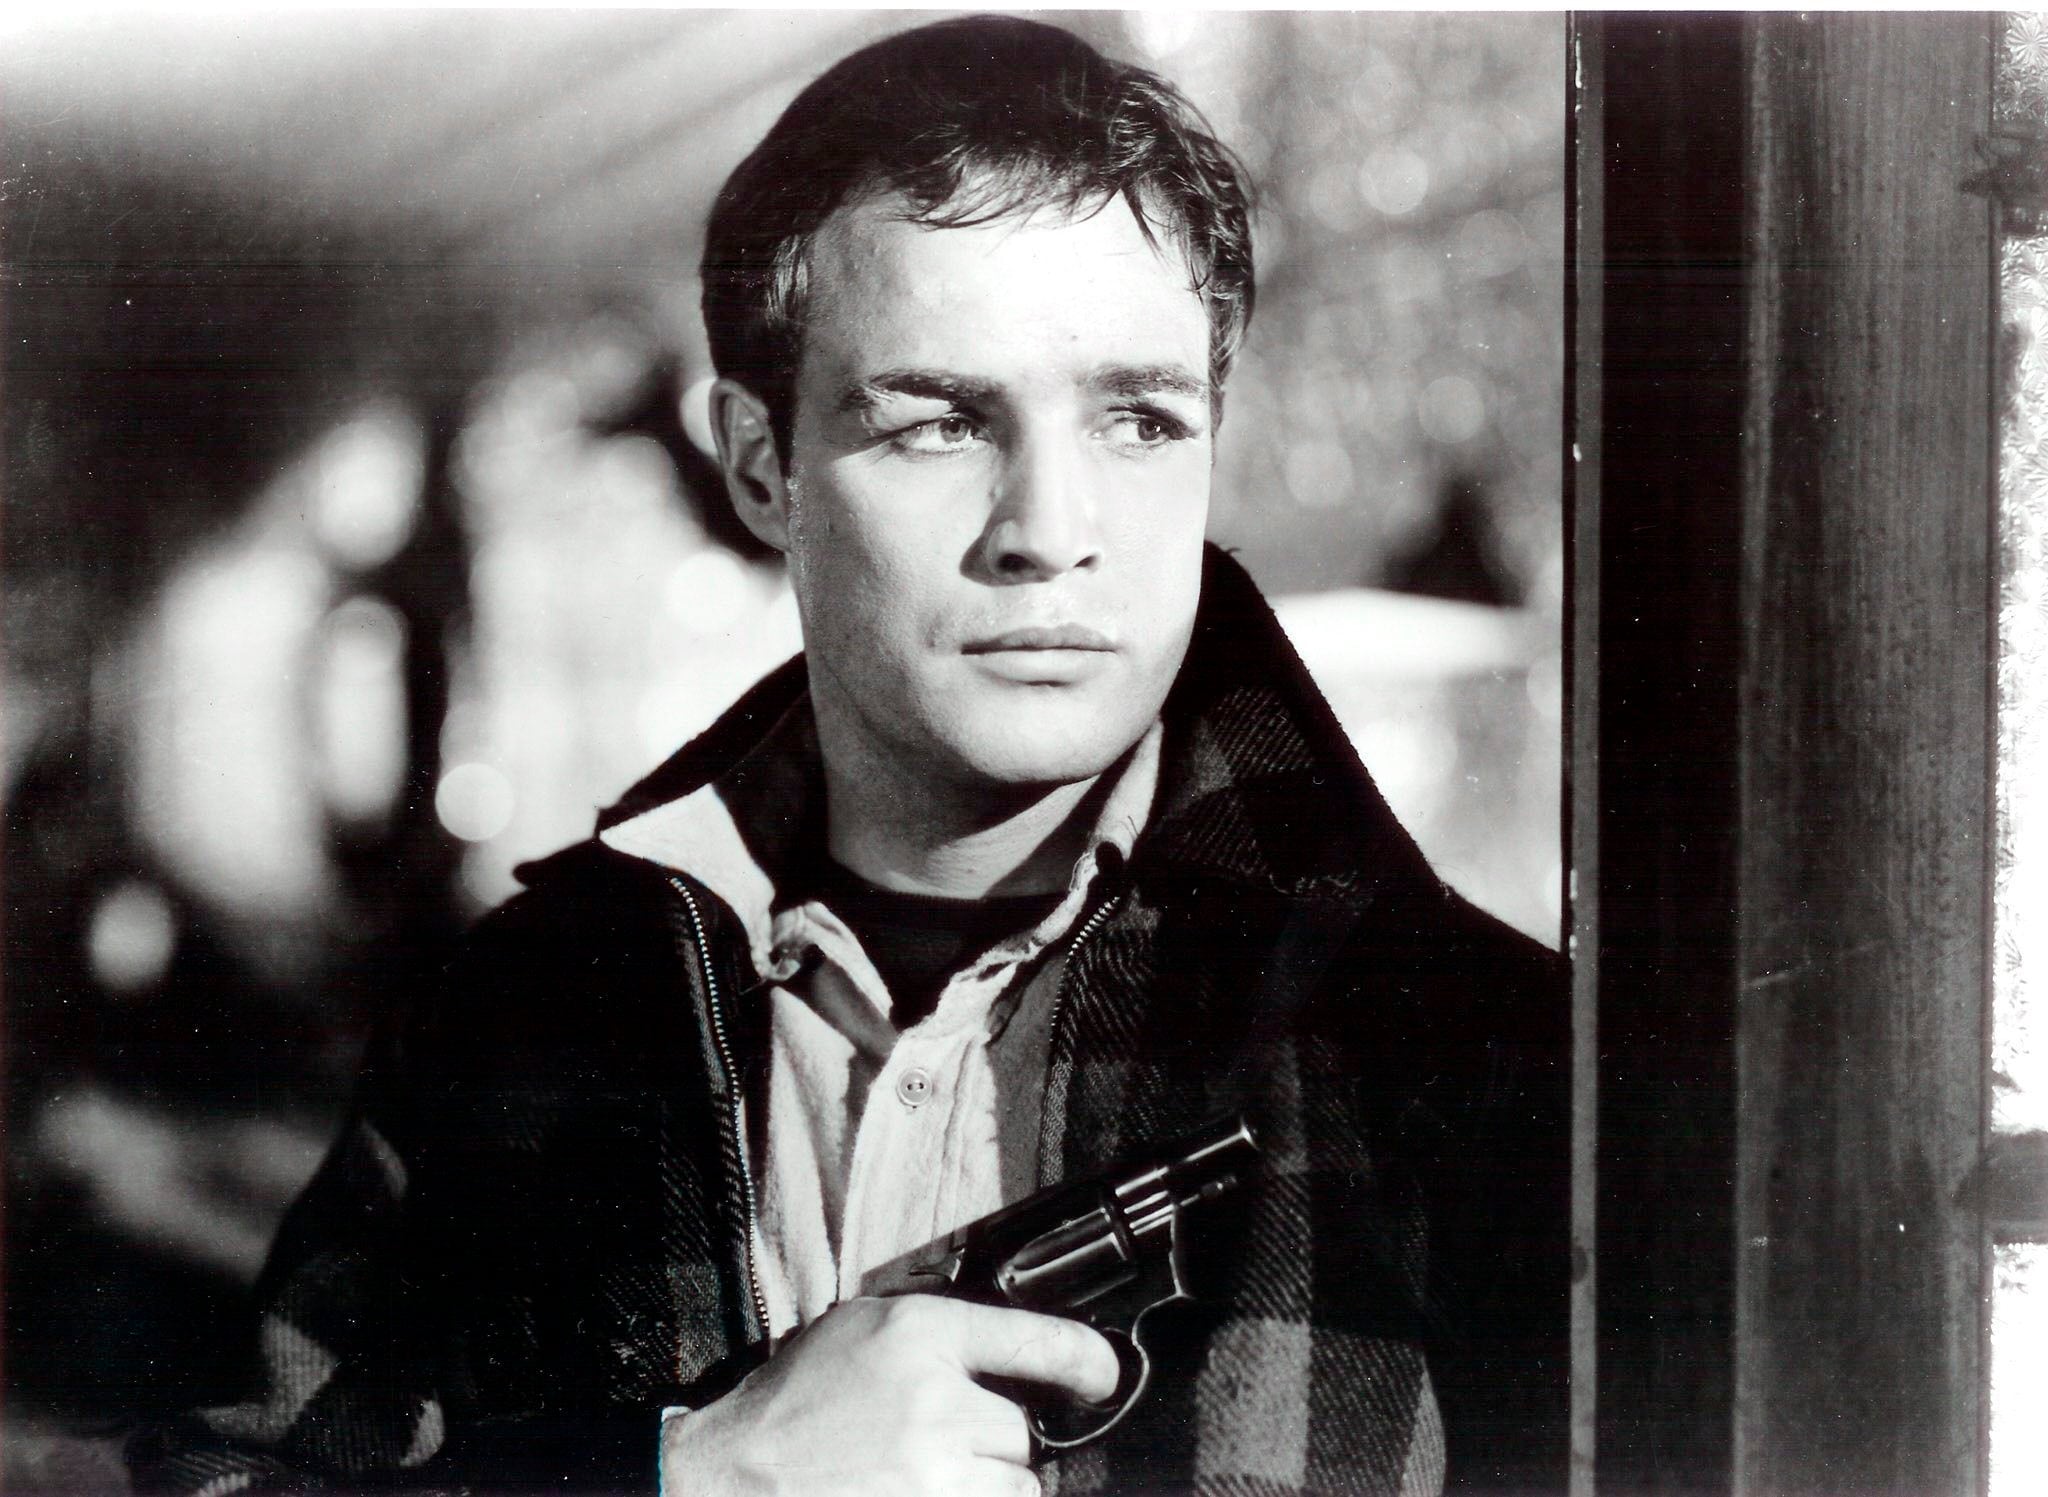 Brando, fallecido a los 80 años en 2004, tenía solo seis años más que Eastwood cuando "El bueno, el malo y el feo" se hizo popular. (Créditos: EPA/HANDOUT)
